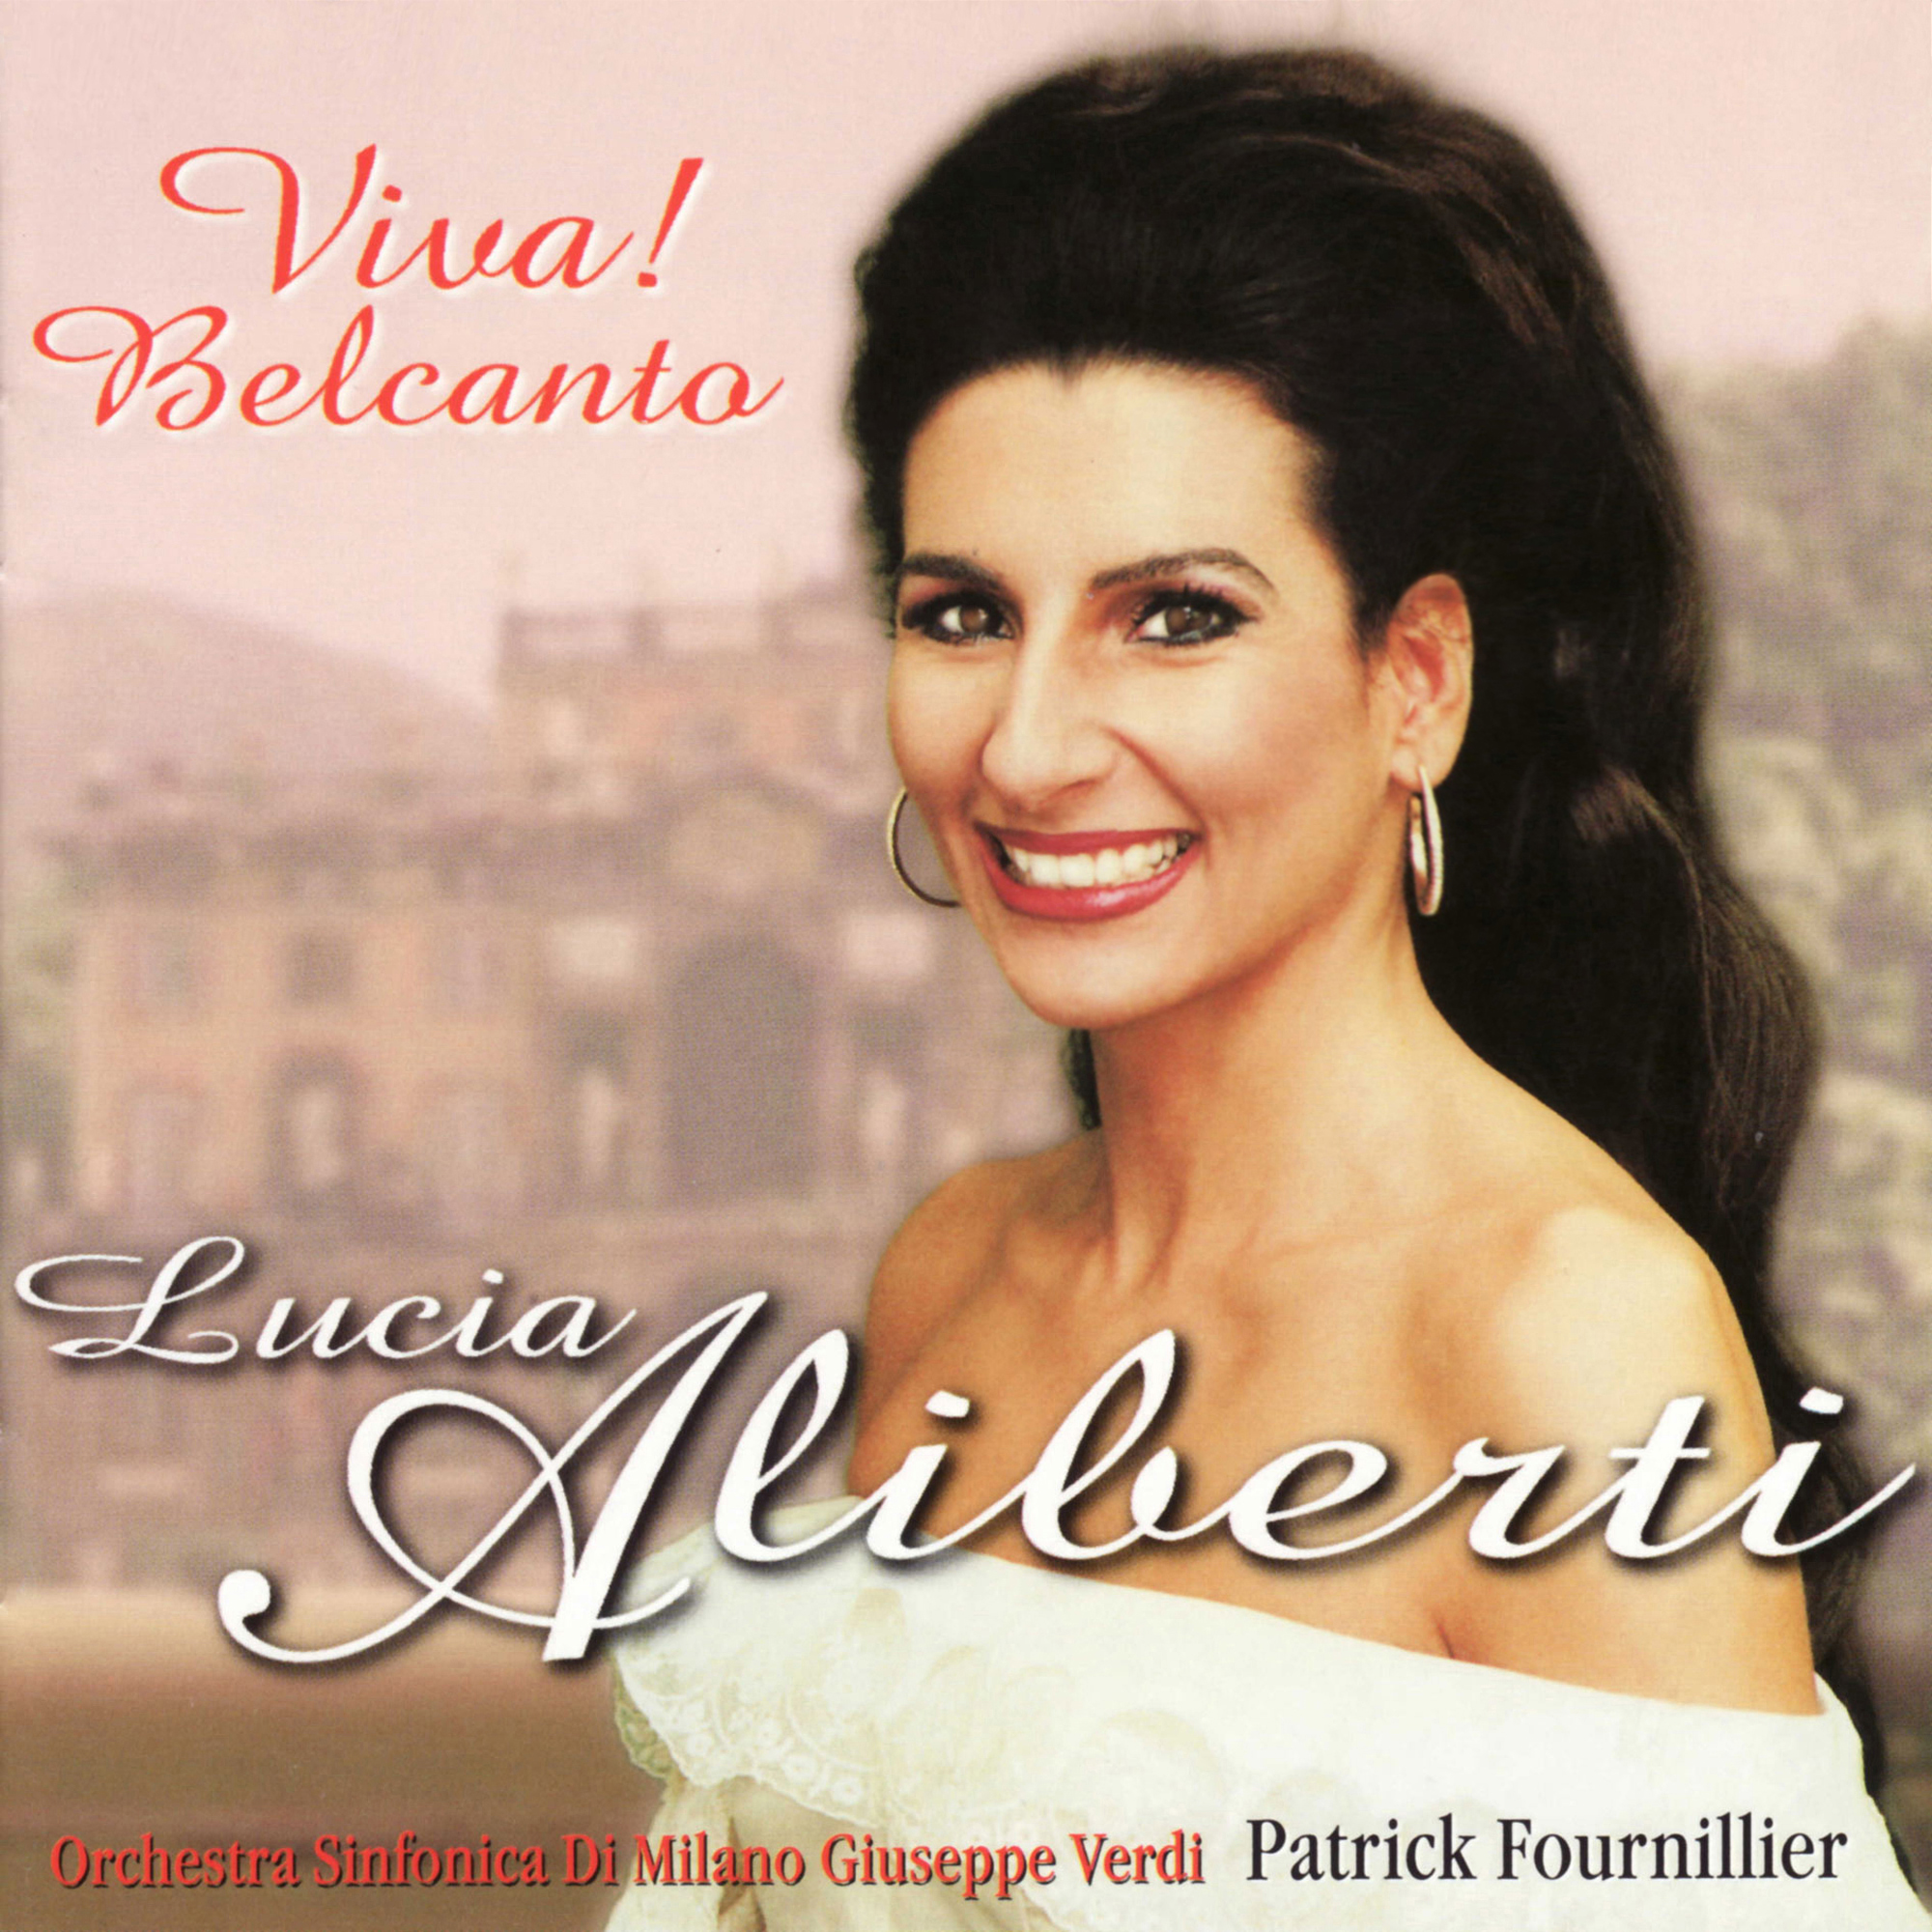 Lucia Aliberti⚘"Viva Belcanto"⚘conductor Patrick Fournillier⚘Orchestra Sinfonica Di Milano Giuseppe Verdi⚘CD Recording⚘RCA BMG Classics⚘:http://www.luciaaliberti.it #luciaaliberti #patrickfournillier #vivabelcanto #orchestrasinfonicadimilanogiuseppeverdi #rcabmgclassics